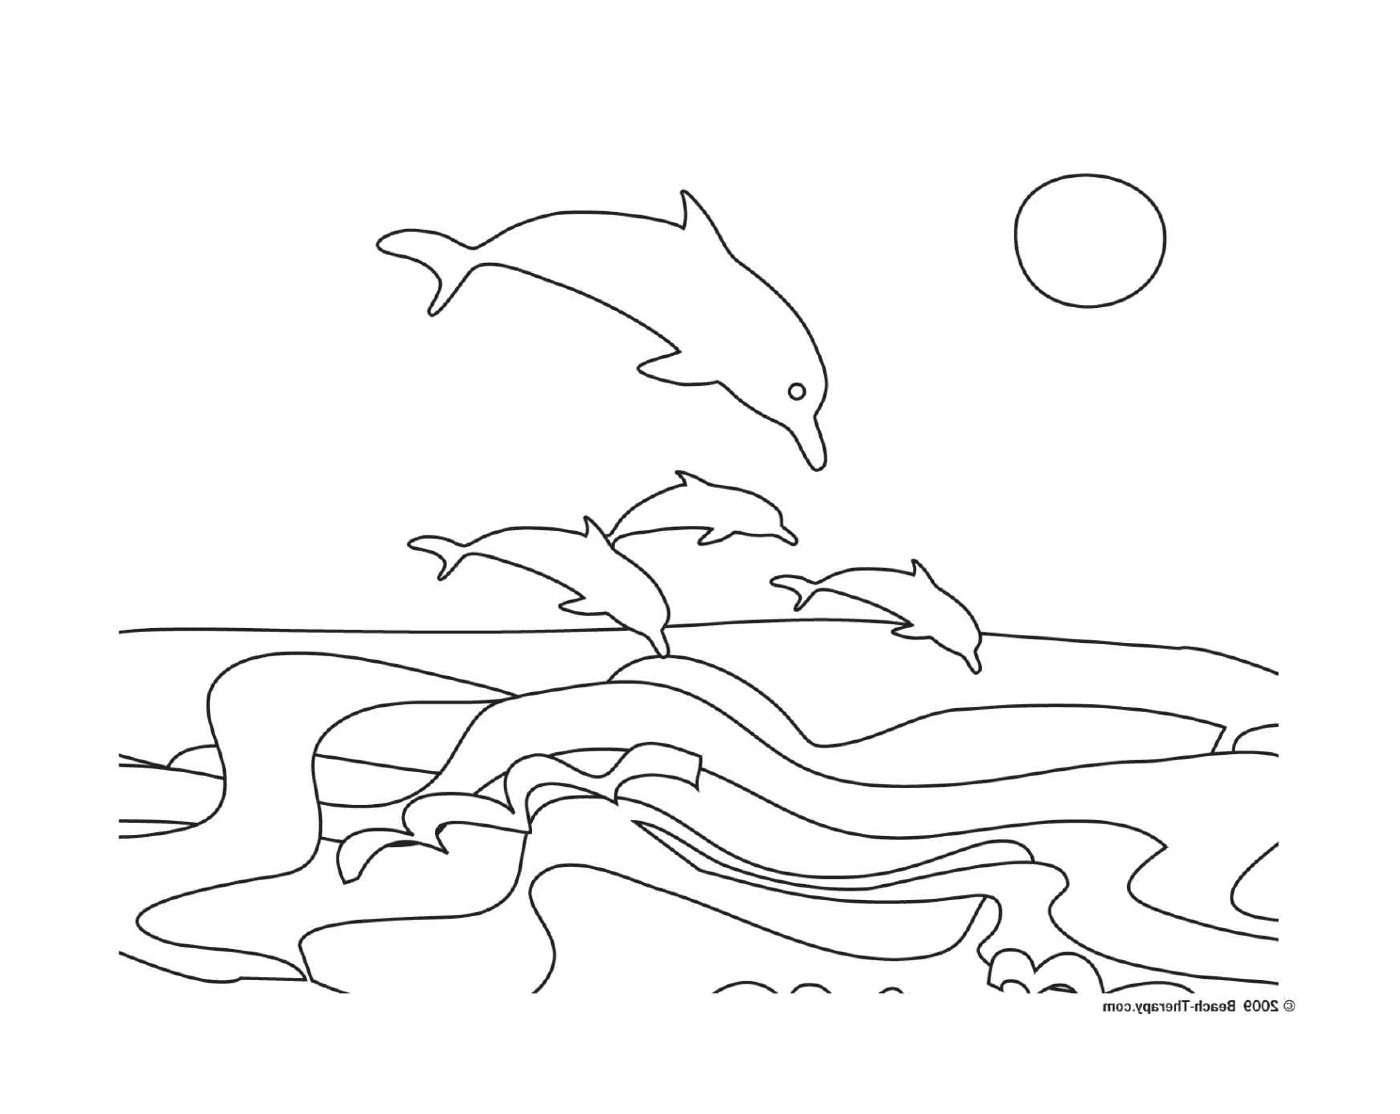  一群海豚从水中跳出来 